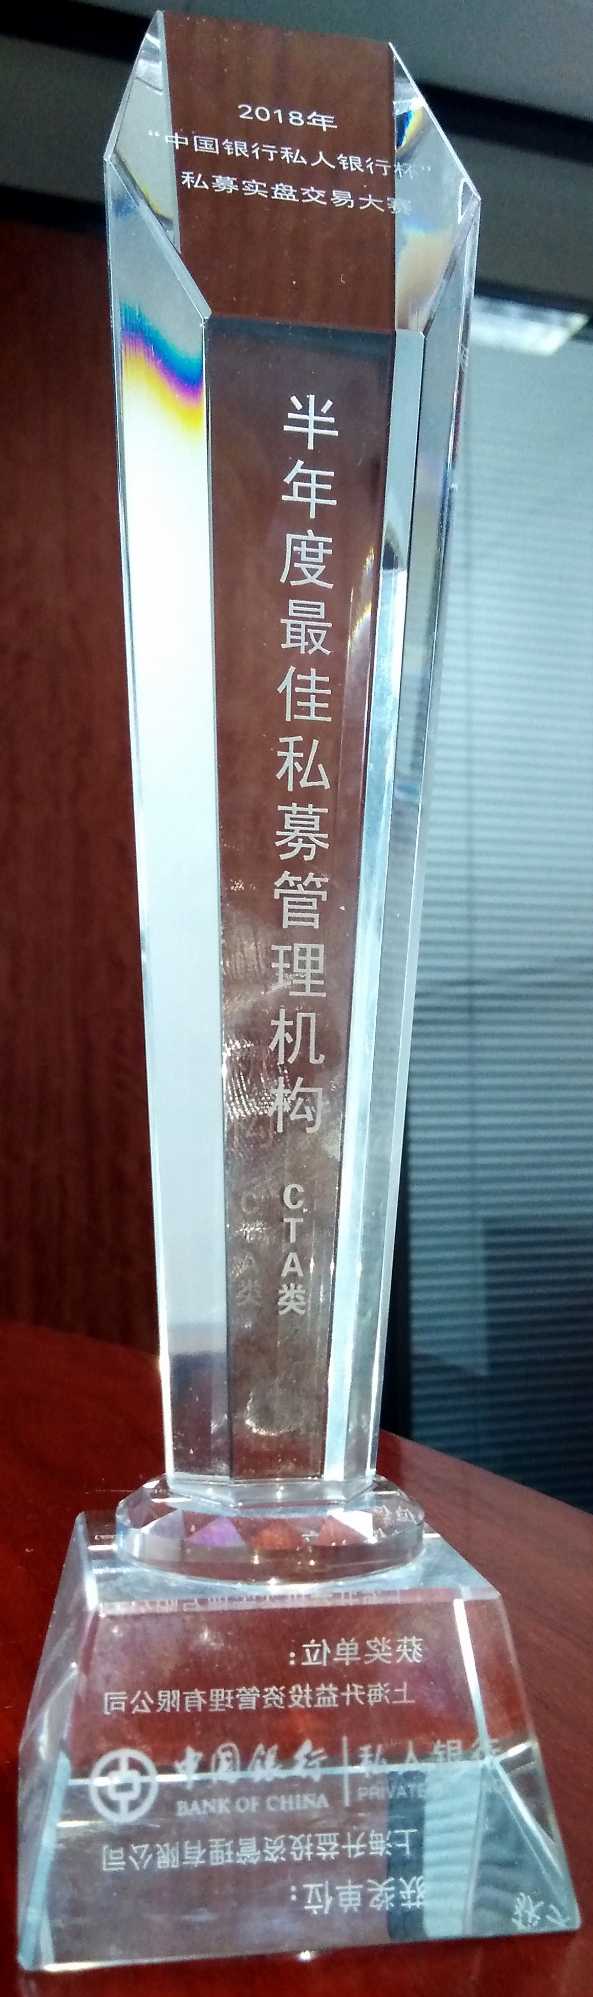 上海升益投资管理有限公司荣获“2018年中国银行私人银行杯”私募实盘交易大赛CTA类半年度最佳私募管理机构-奖杯